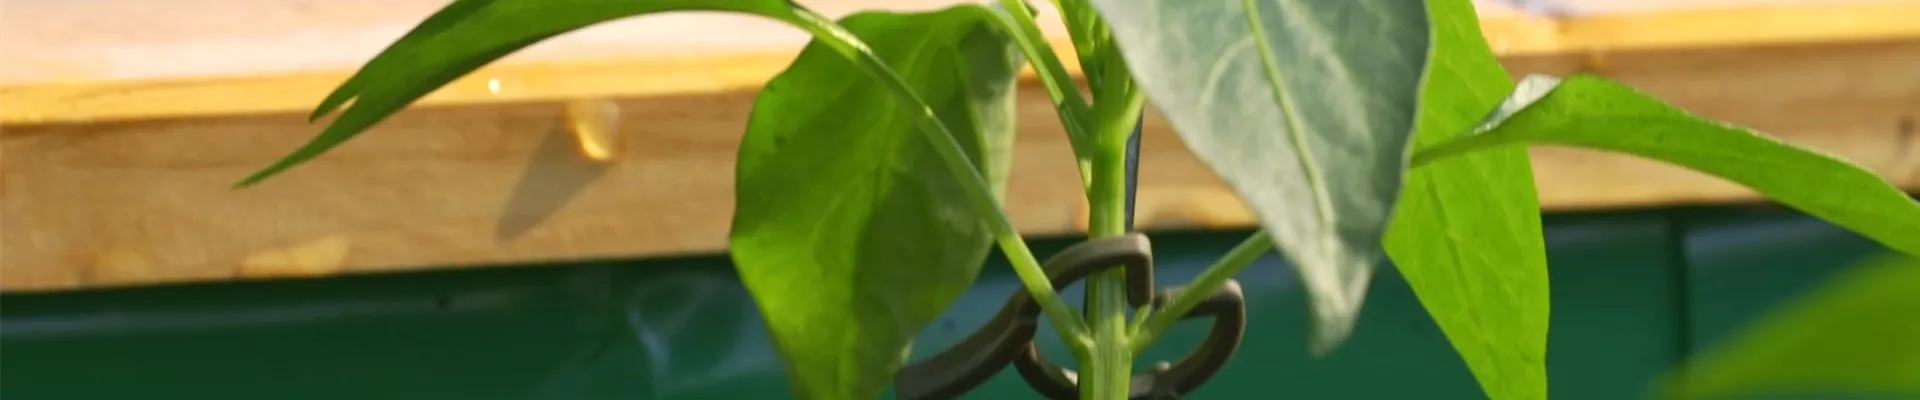 Gemüse-Paprika - Einpflanzen im Hochbeet (Thumbnail).jpg